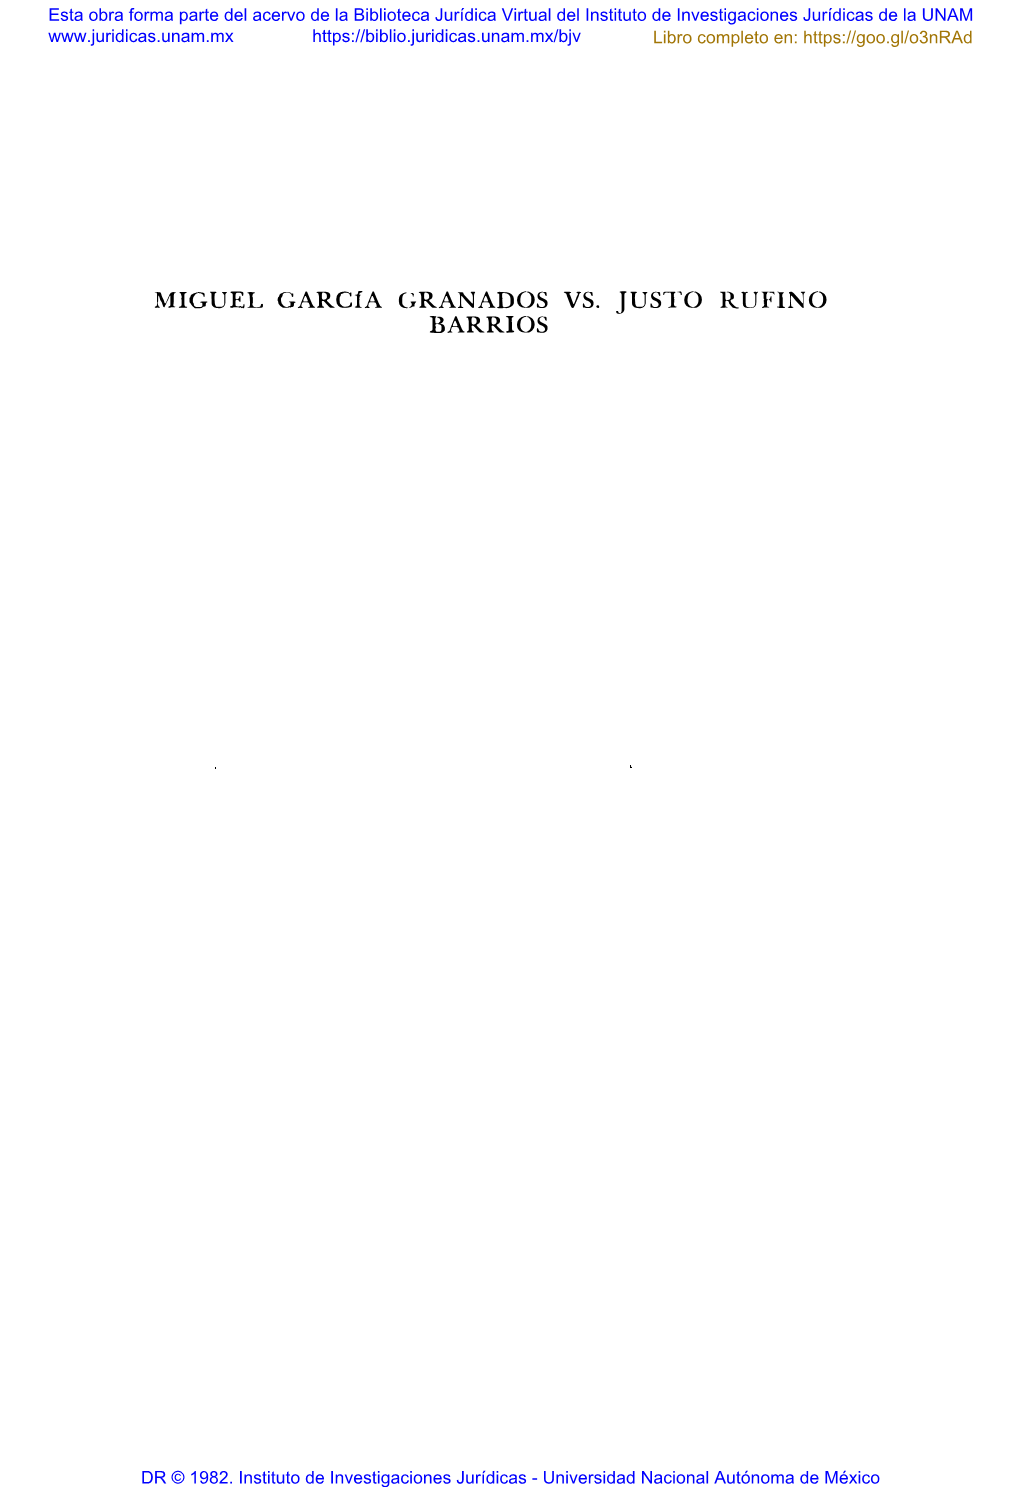 MIGUEL Garcfa GRANADOS VS. JUSTO RUFINO BARRIOS